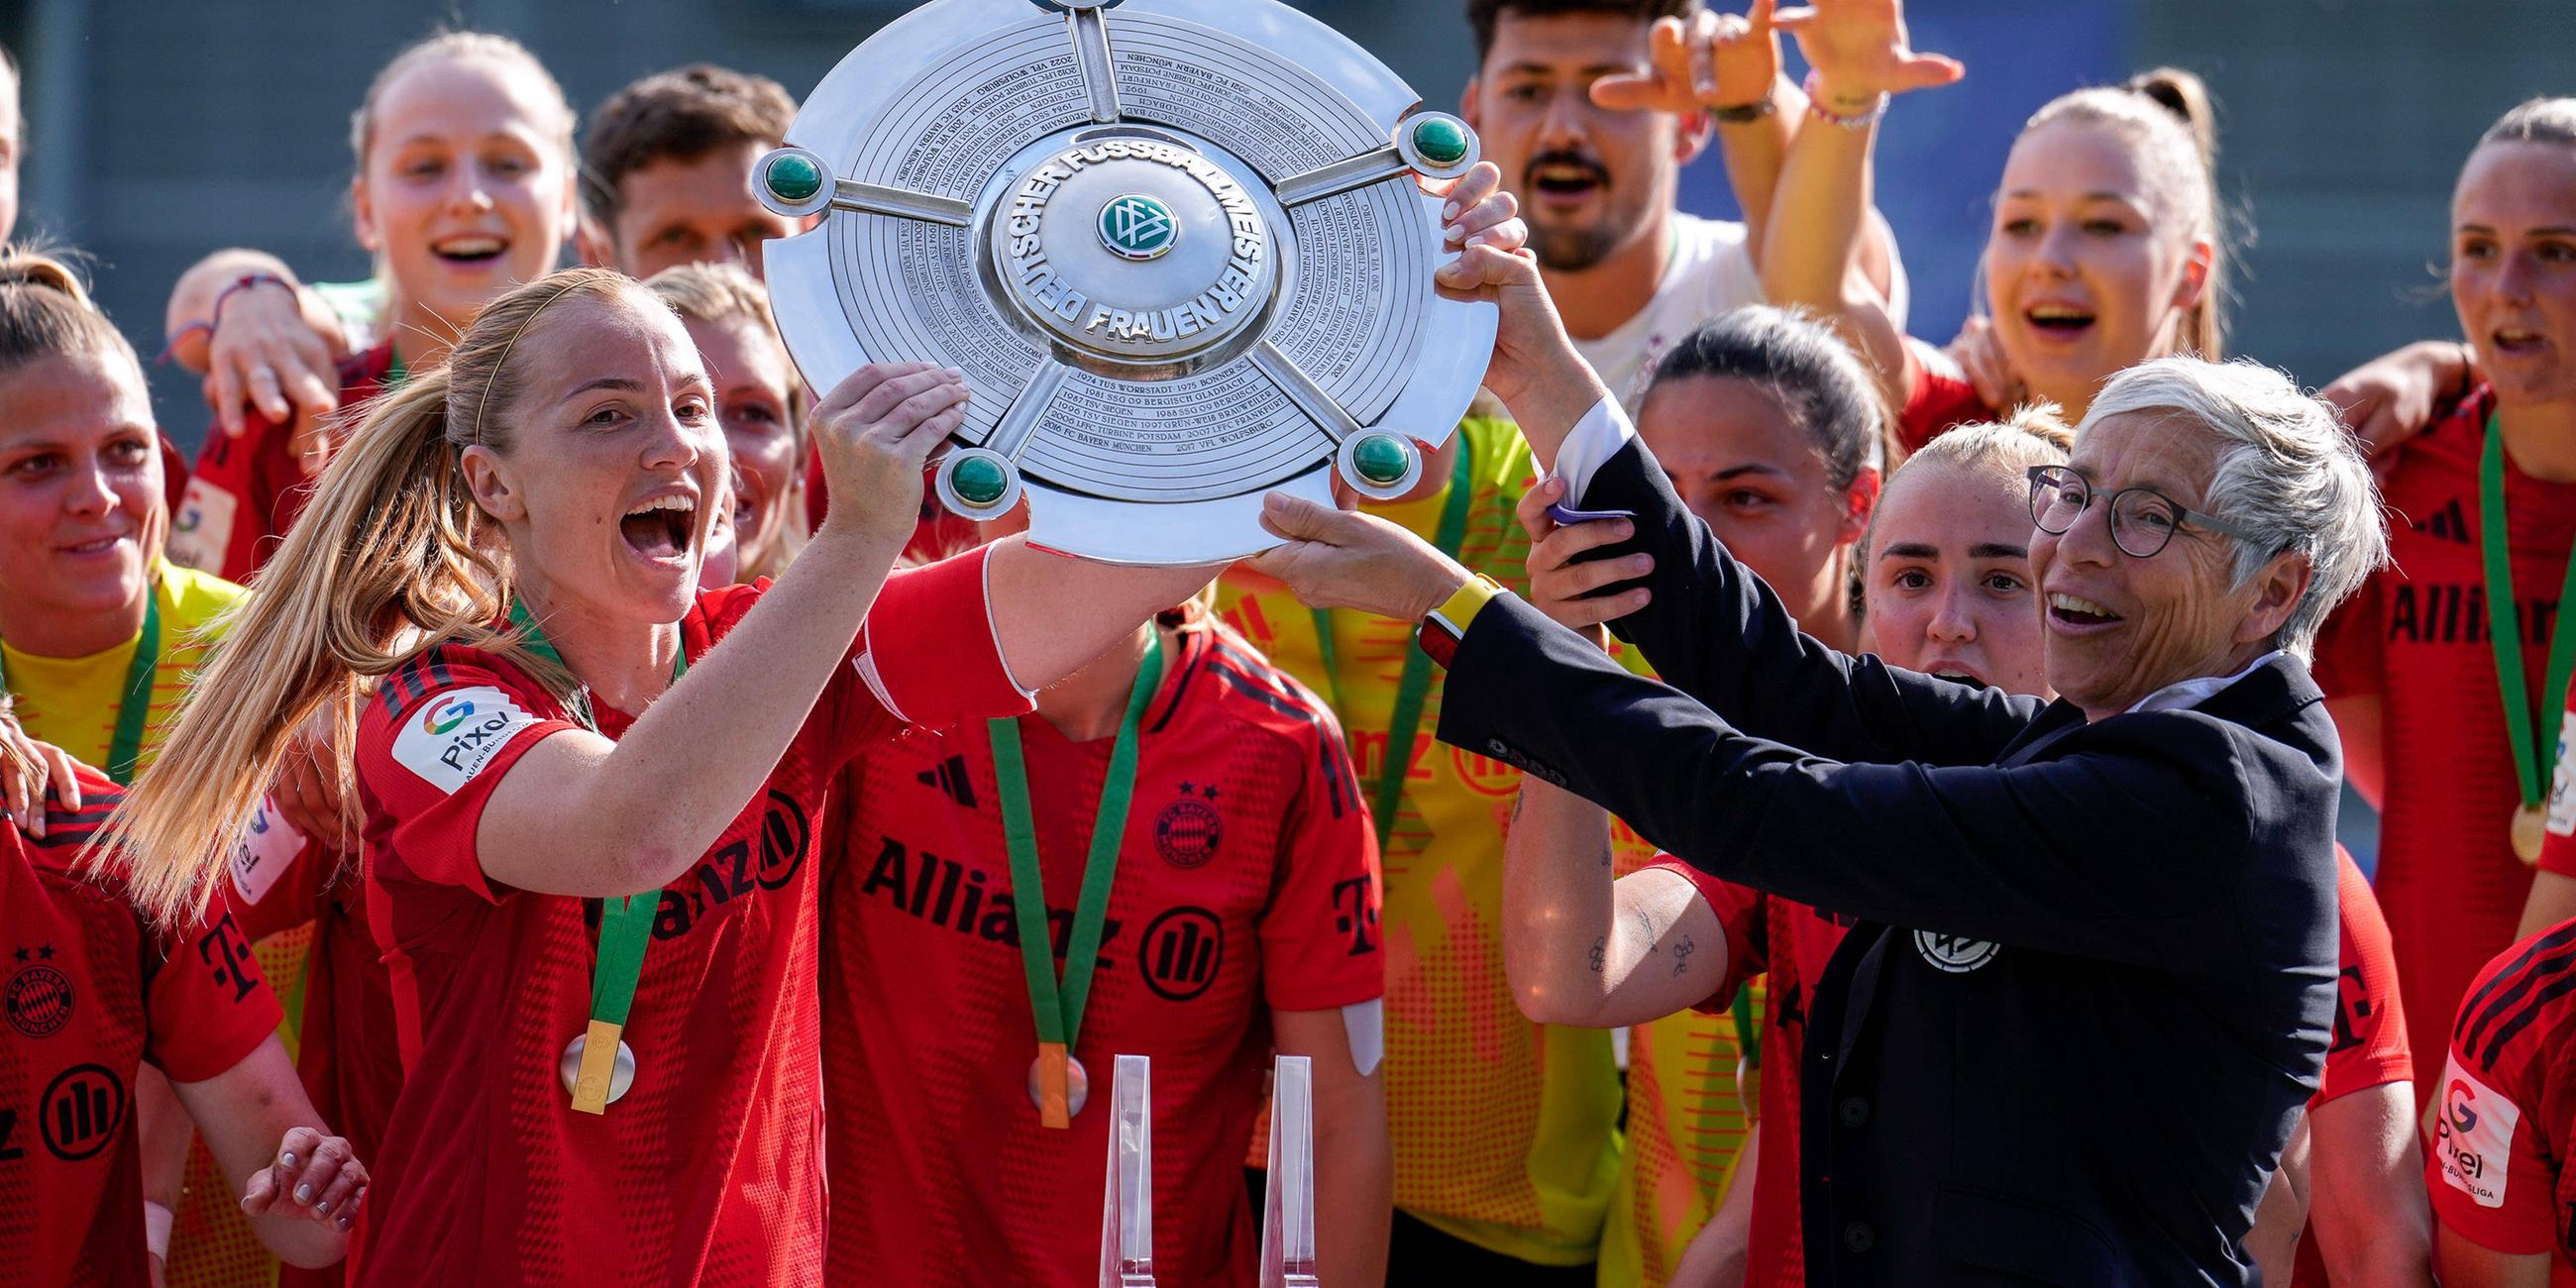 Glodis Perla Viggosdottir von Bayern München bekommt die Meisterschale